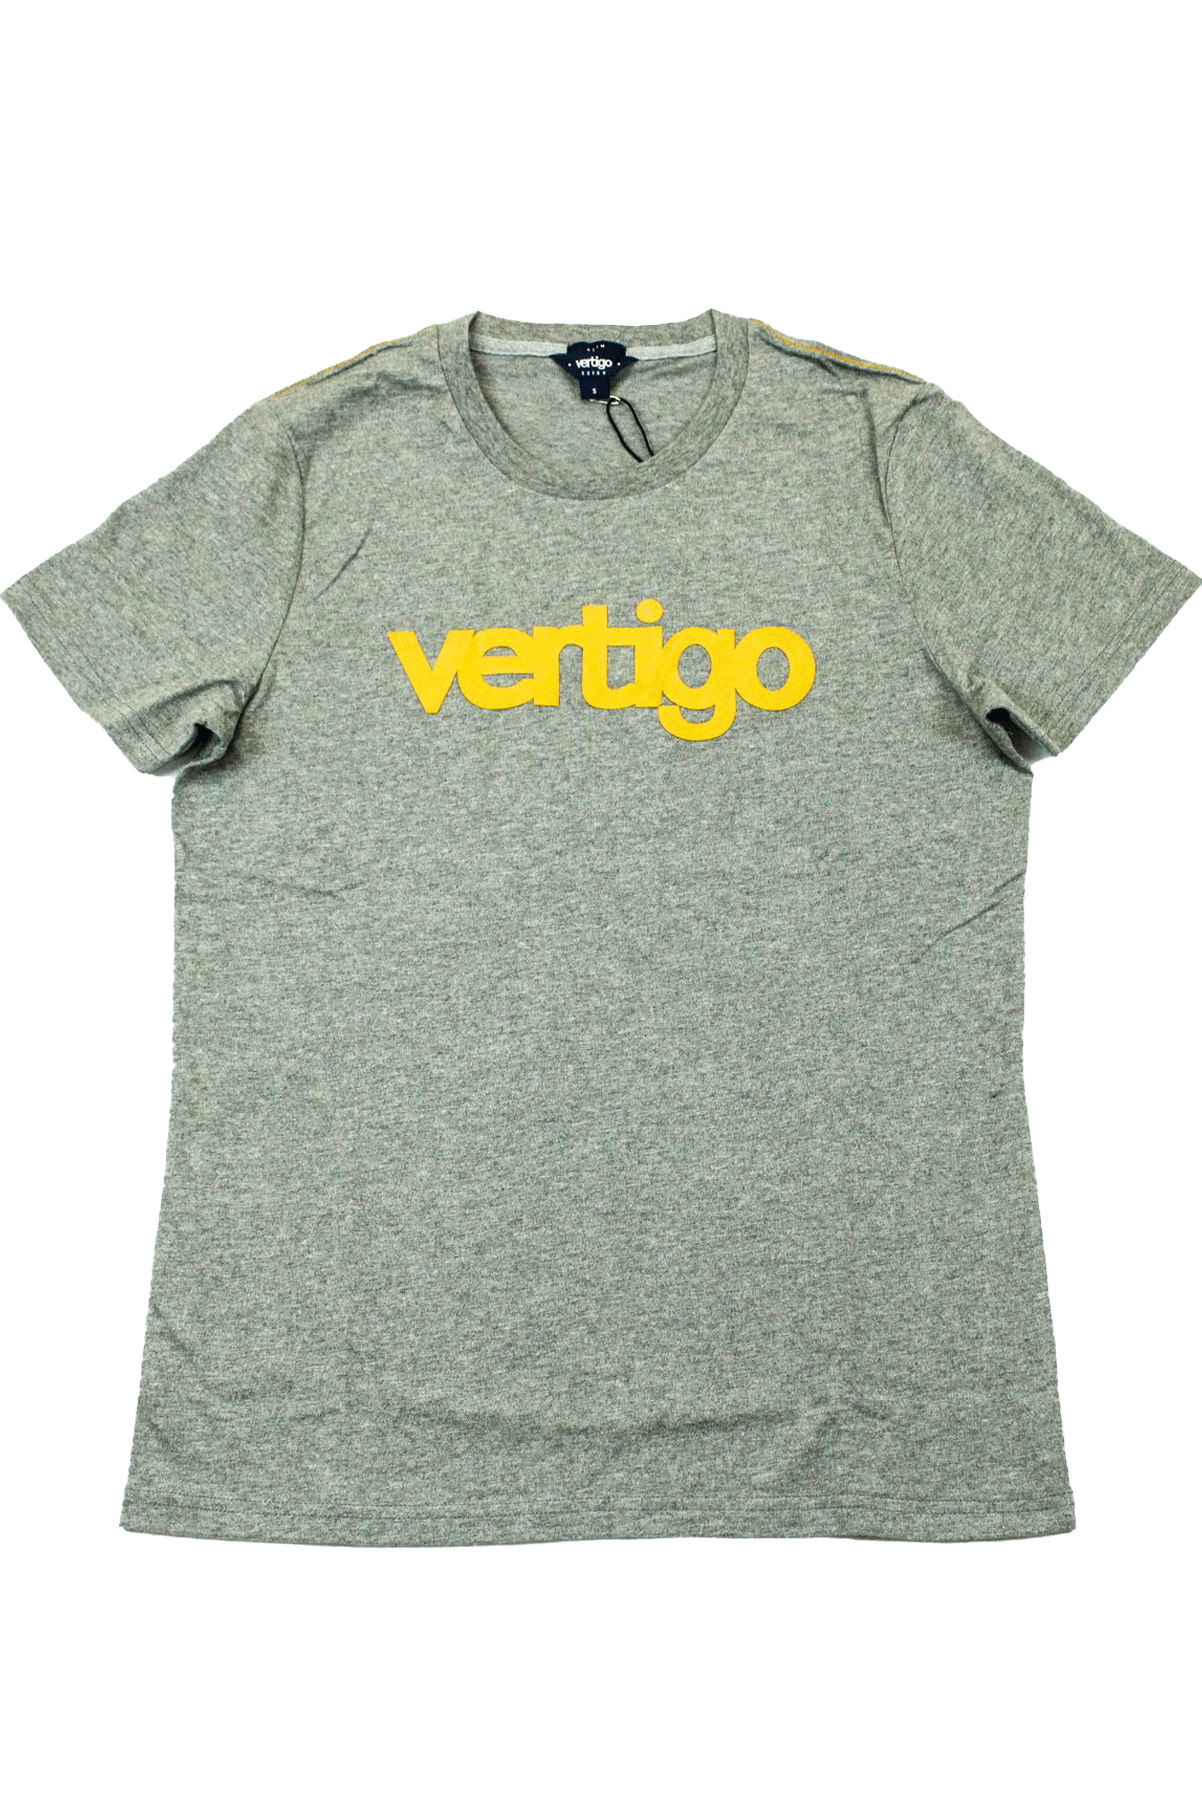 Vertigo Grey T-Shirt